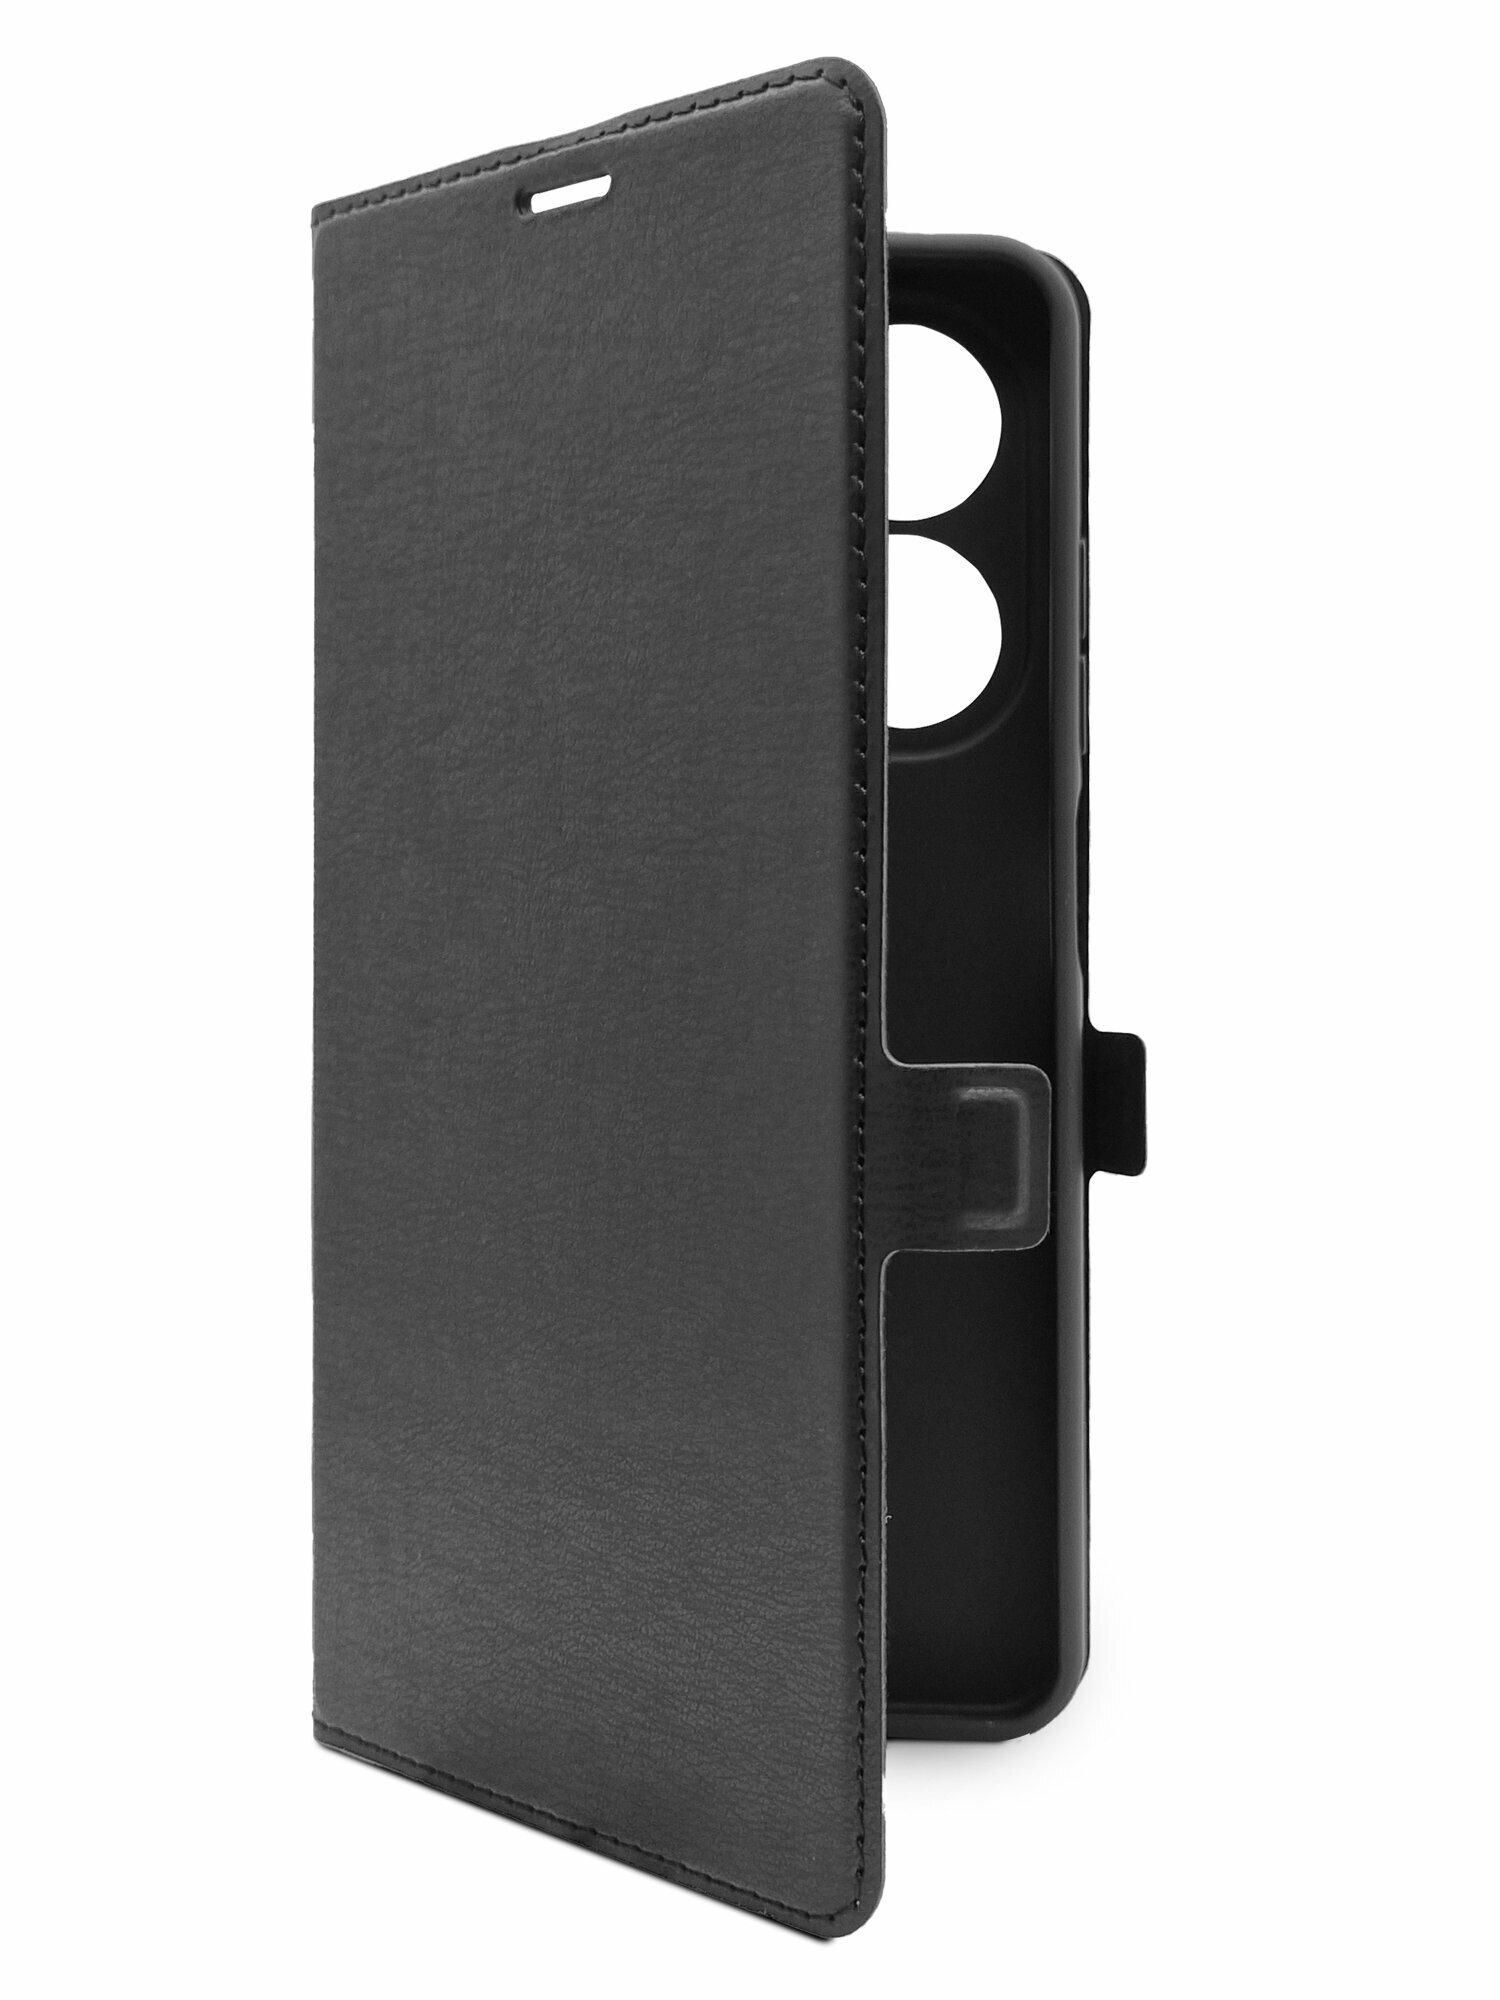 Чехол на Tecno Spark 20C (Техно Спарк 20С) черный книжка эко-кожа с функцией подставки отделением для пластиковых карт и магнитами Book case, Miuko